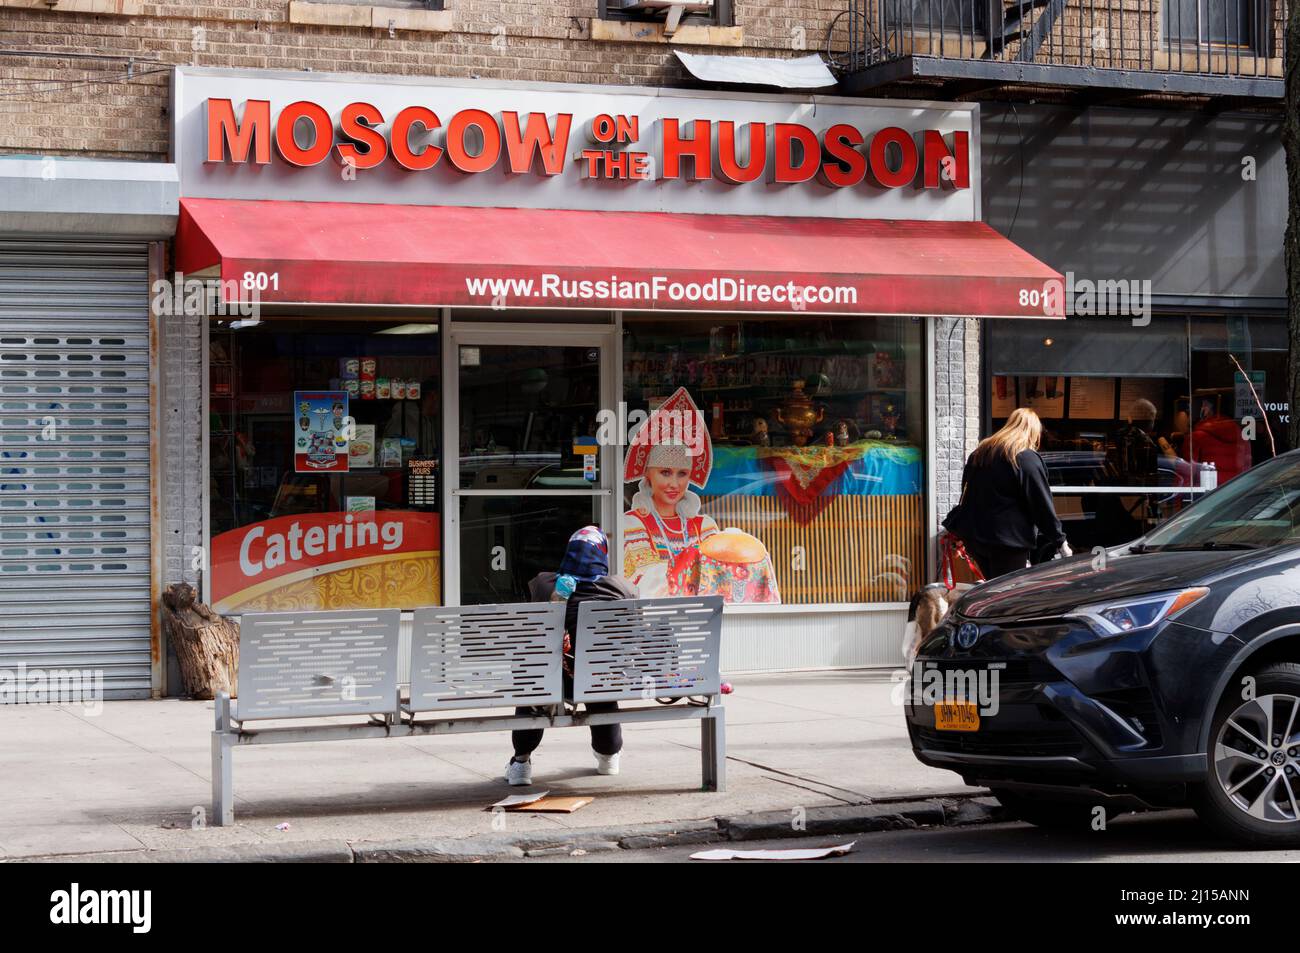 Moscou on the Hudson, un magasin d'alimentation russe situé au 181st St. Dans la section Wasington Heights de Northern Manhattan, New York Banque D'Images